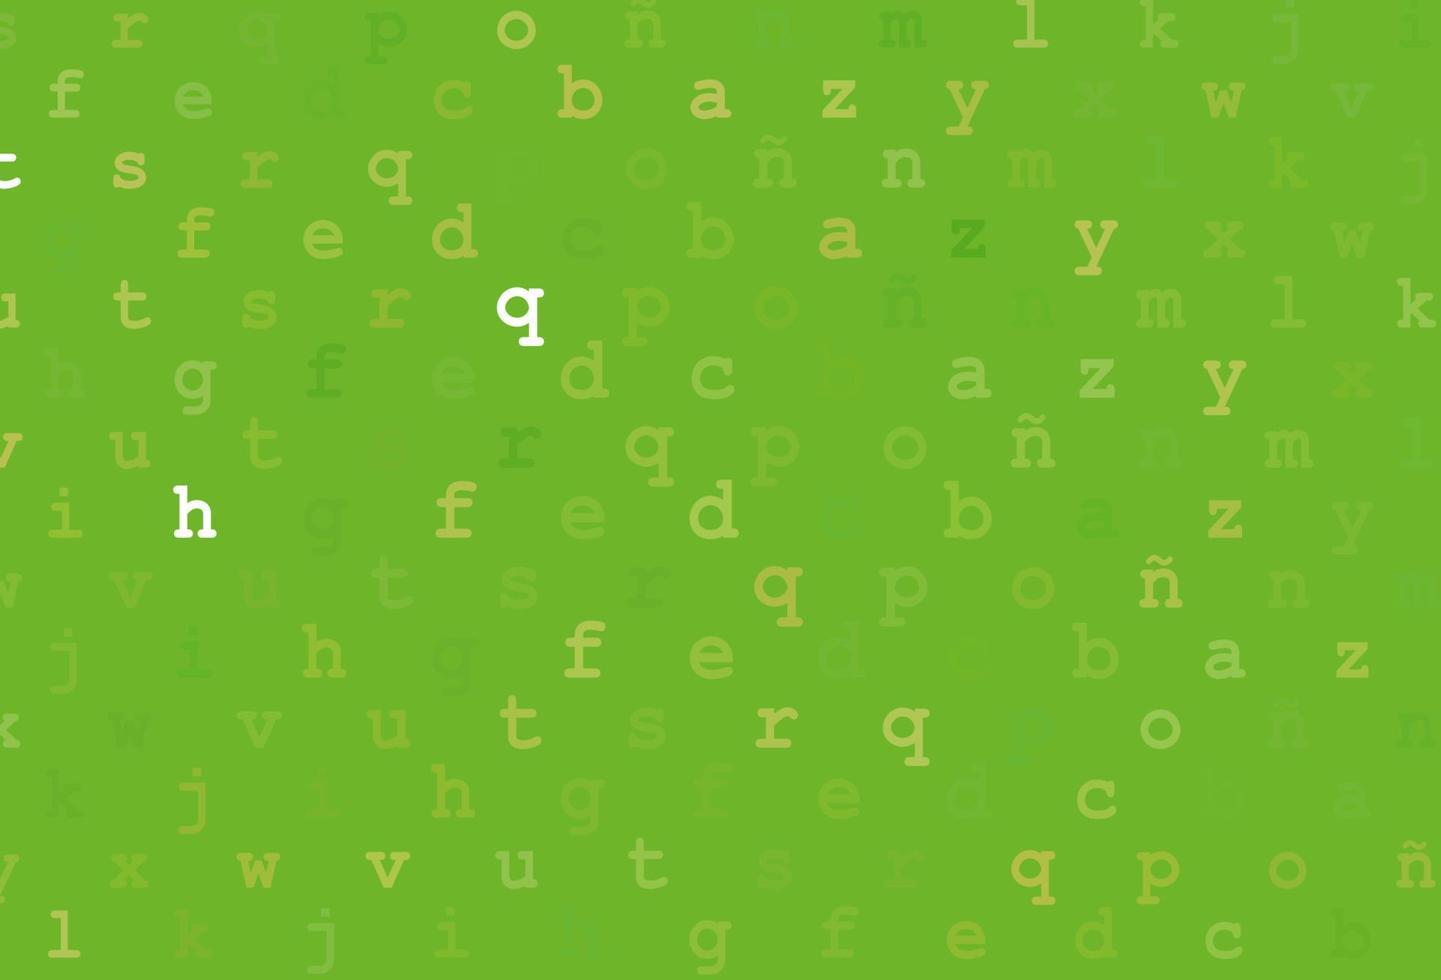 ljusgrön, gul vektor layout med latinska alfabetet.